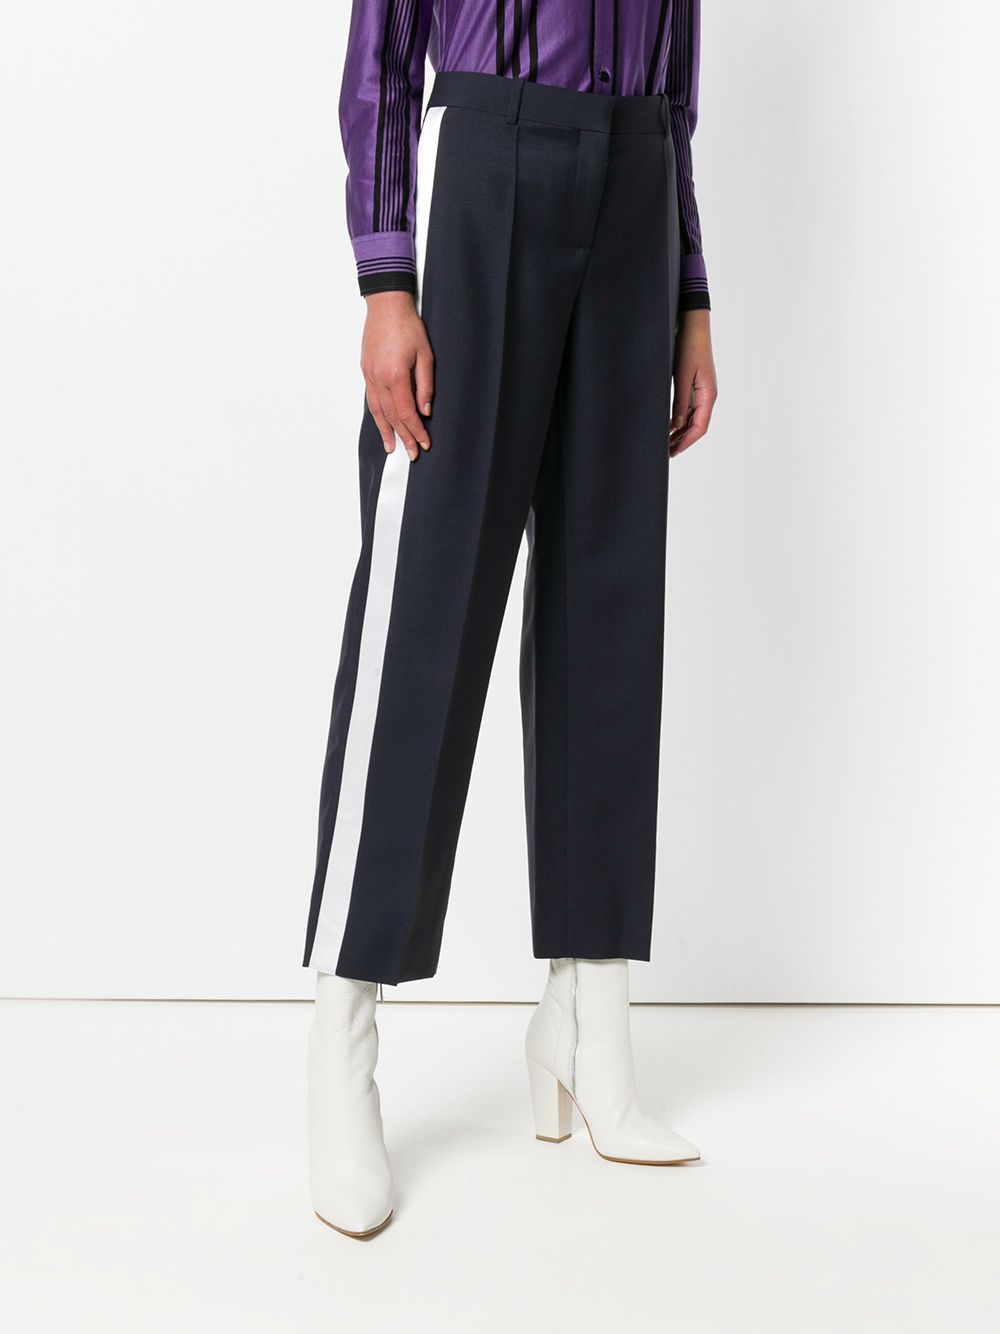 фото Givenchy брюки с атласными полосками сбоку